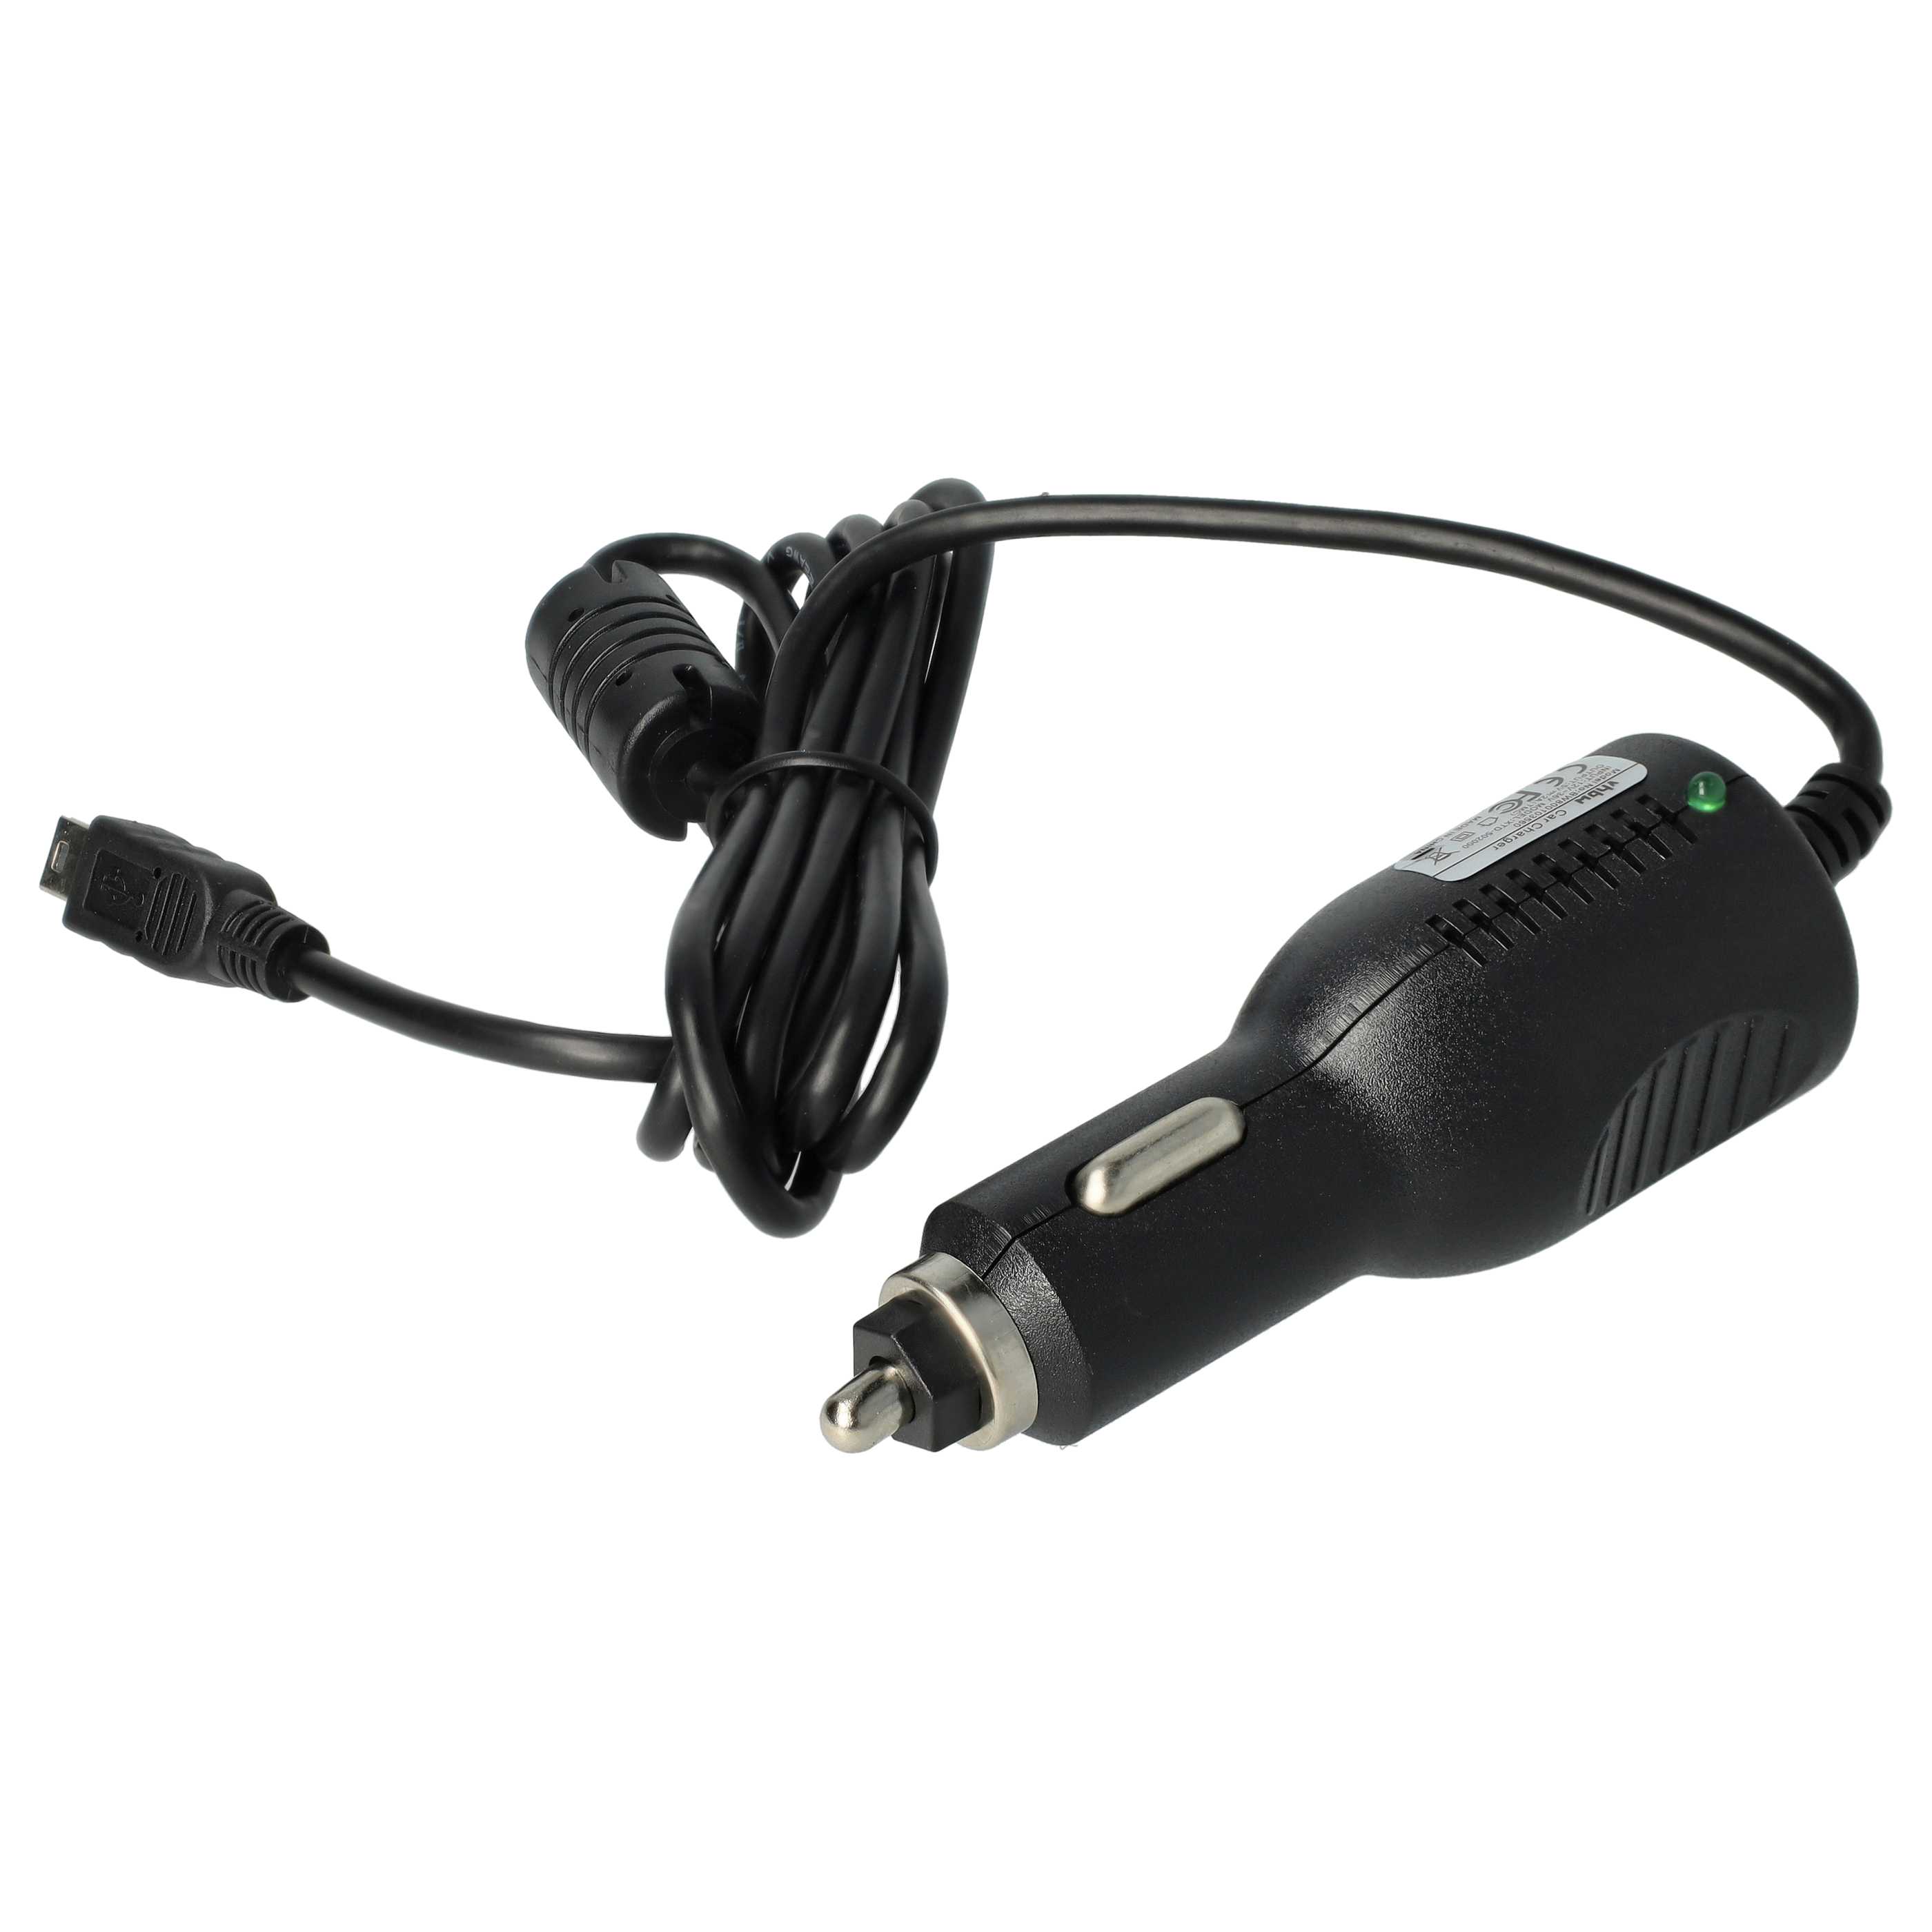 Caricatore per auto mini-USB 2,0 A per dispositivi come GPS, navigatore + antenna TMC integrata